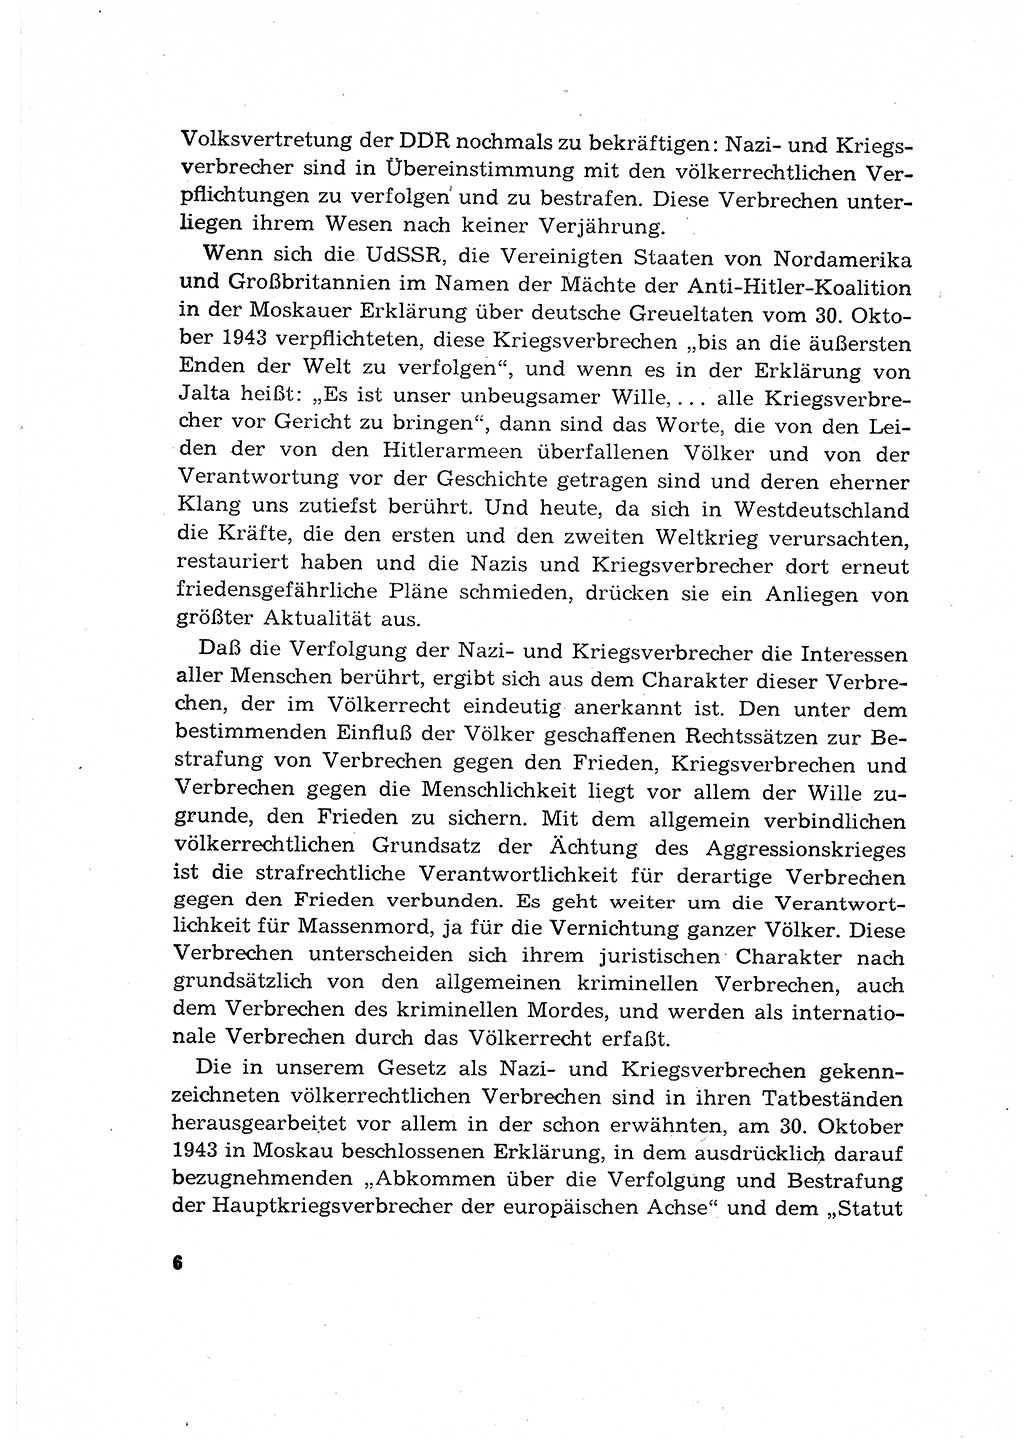 Bestrafung der Nazi- und Kriegsverbrecher [Deutsche Demokratische Republik (DDR)] 1964, Seite 6 (Bestr. Nazi-Kr.-Verbr. DDR 1964, S. 6)